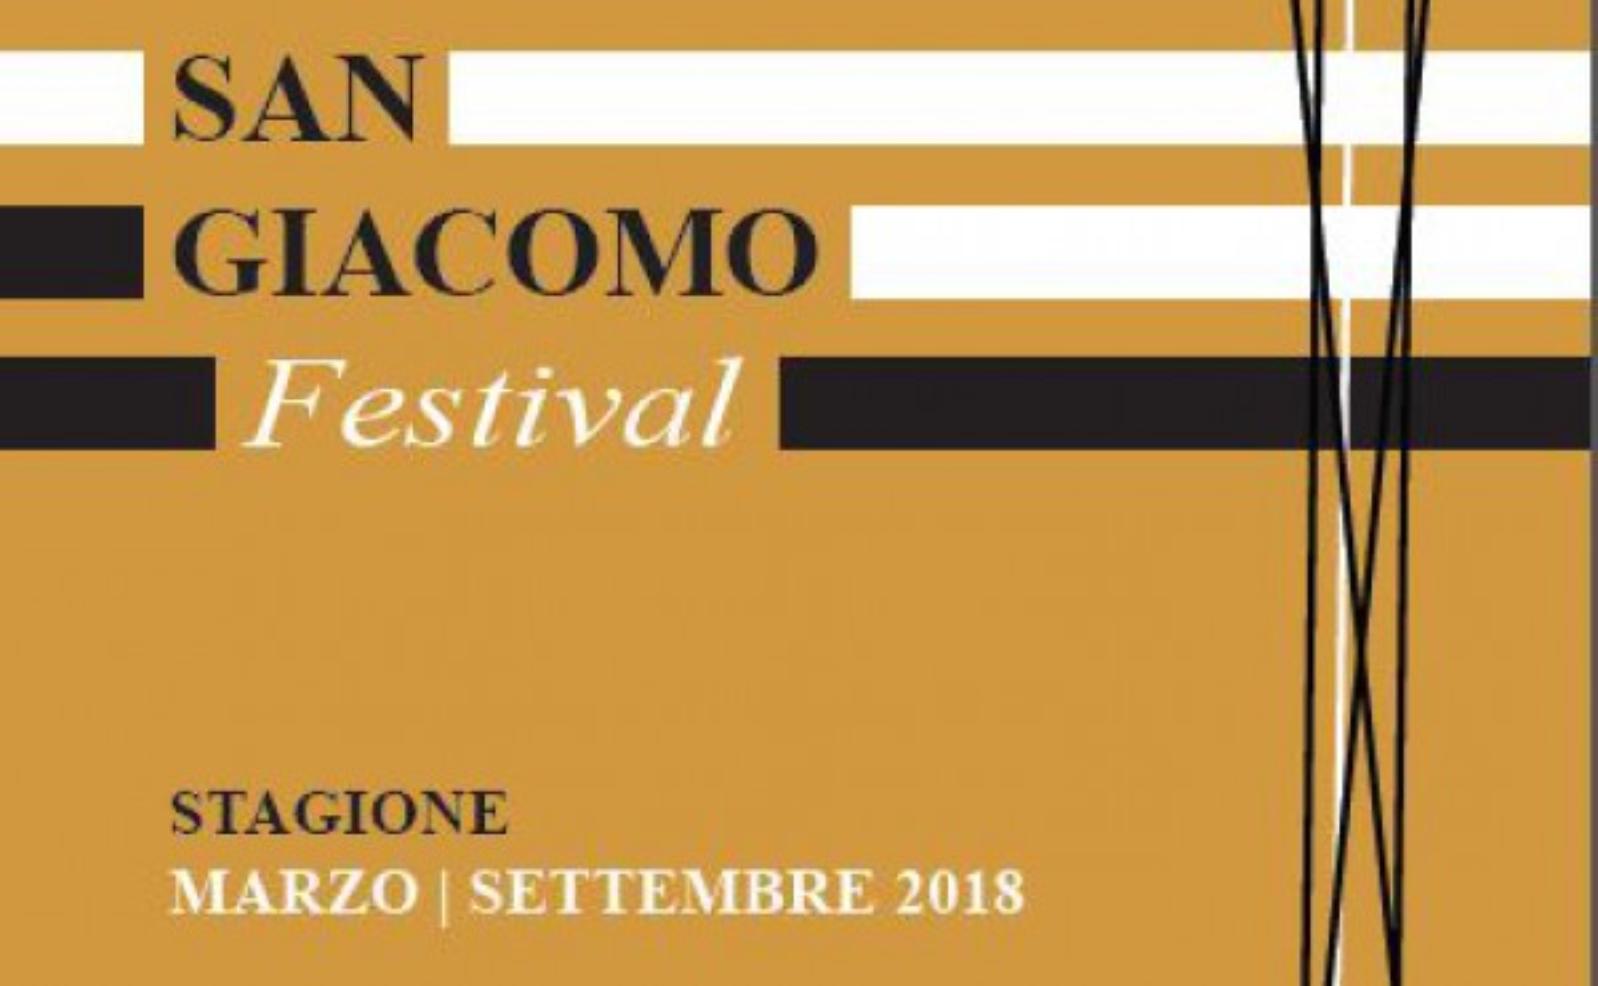 San Giacomo Festival - March 2018